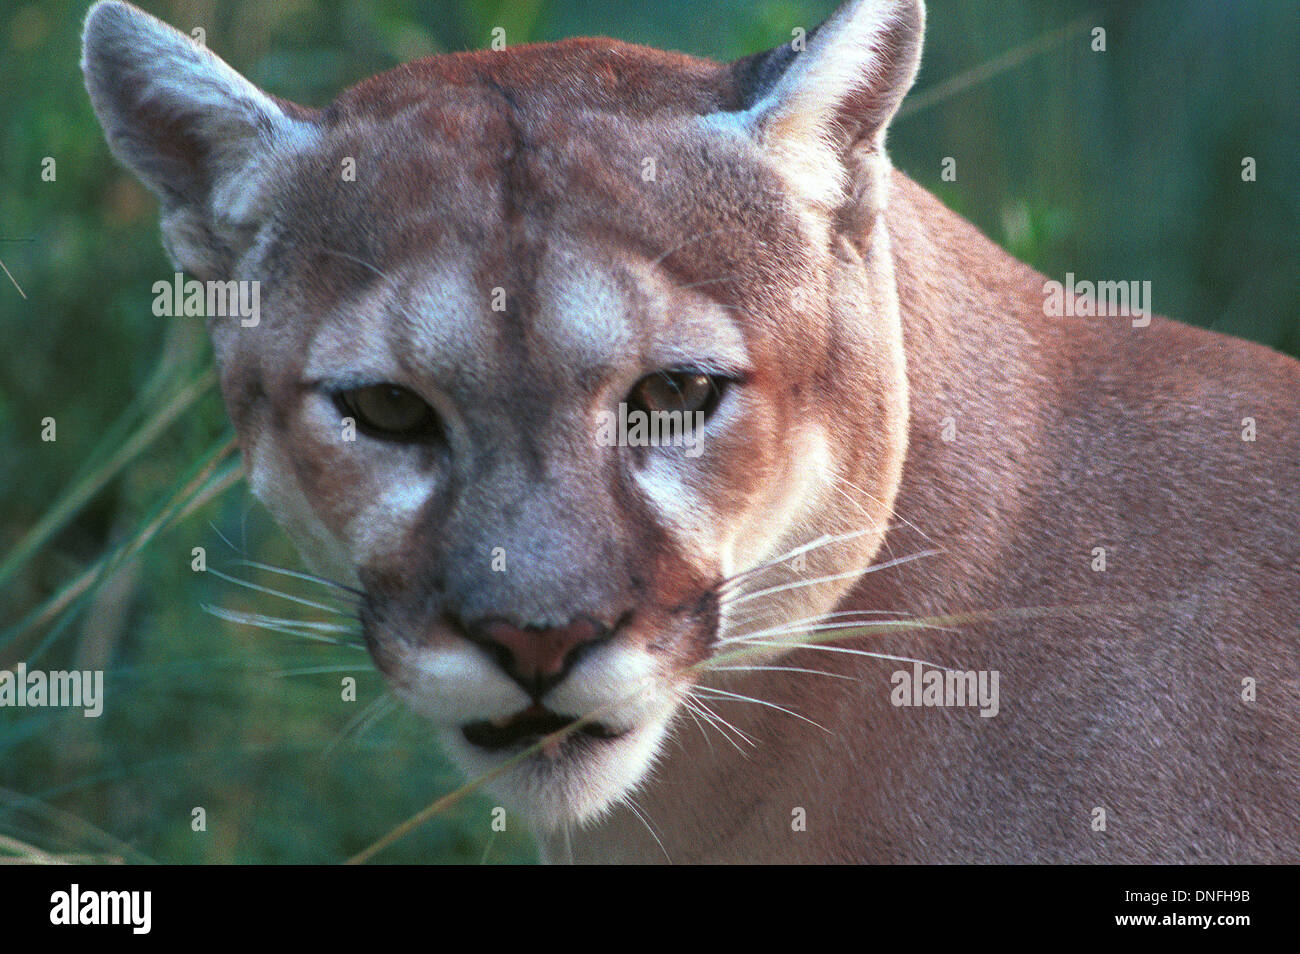 Puma, Puma, Puma Großkatze in Familie Felidae ursprünglich aus Amerika,  Stengel und ihre Beute zu überfallen Stockfotografie - Alamy